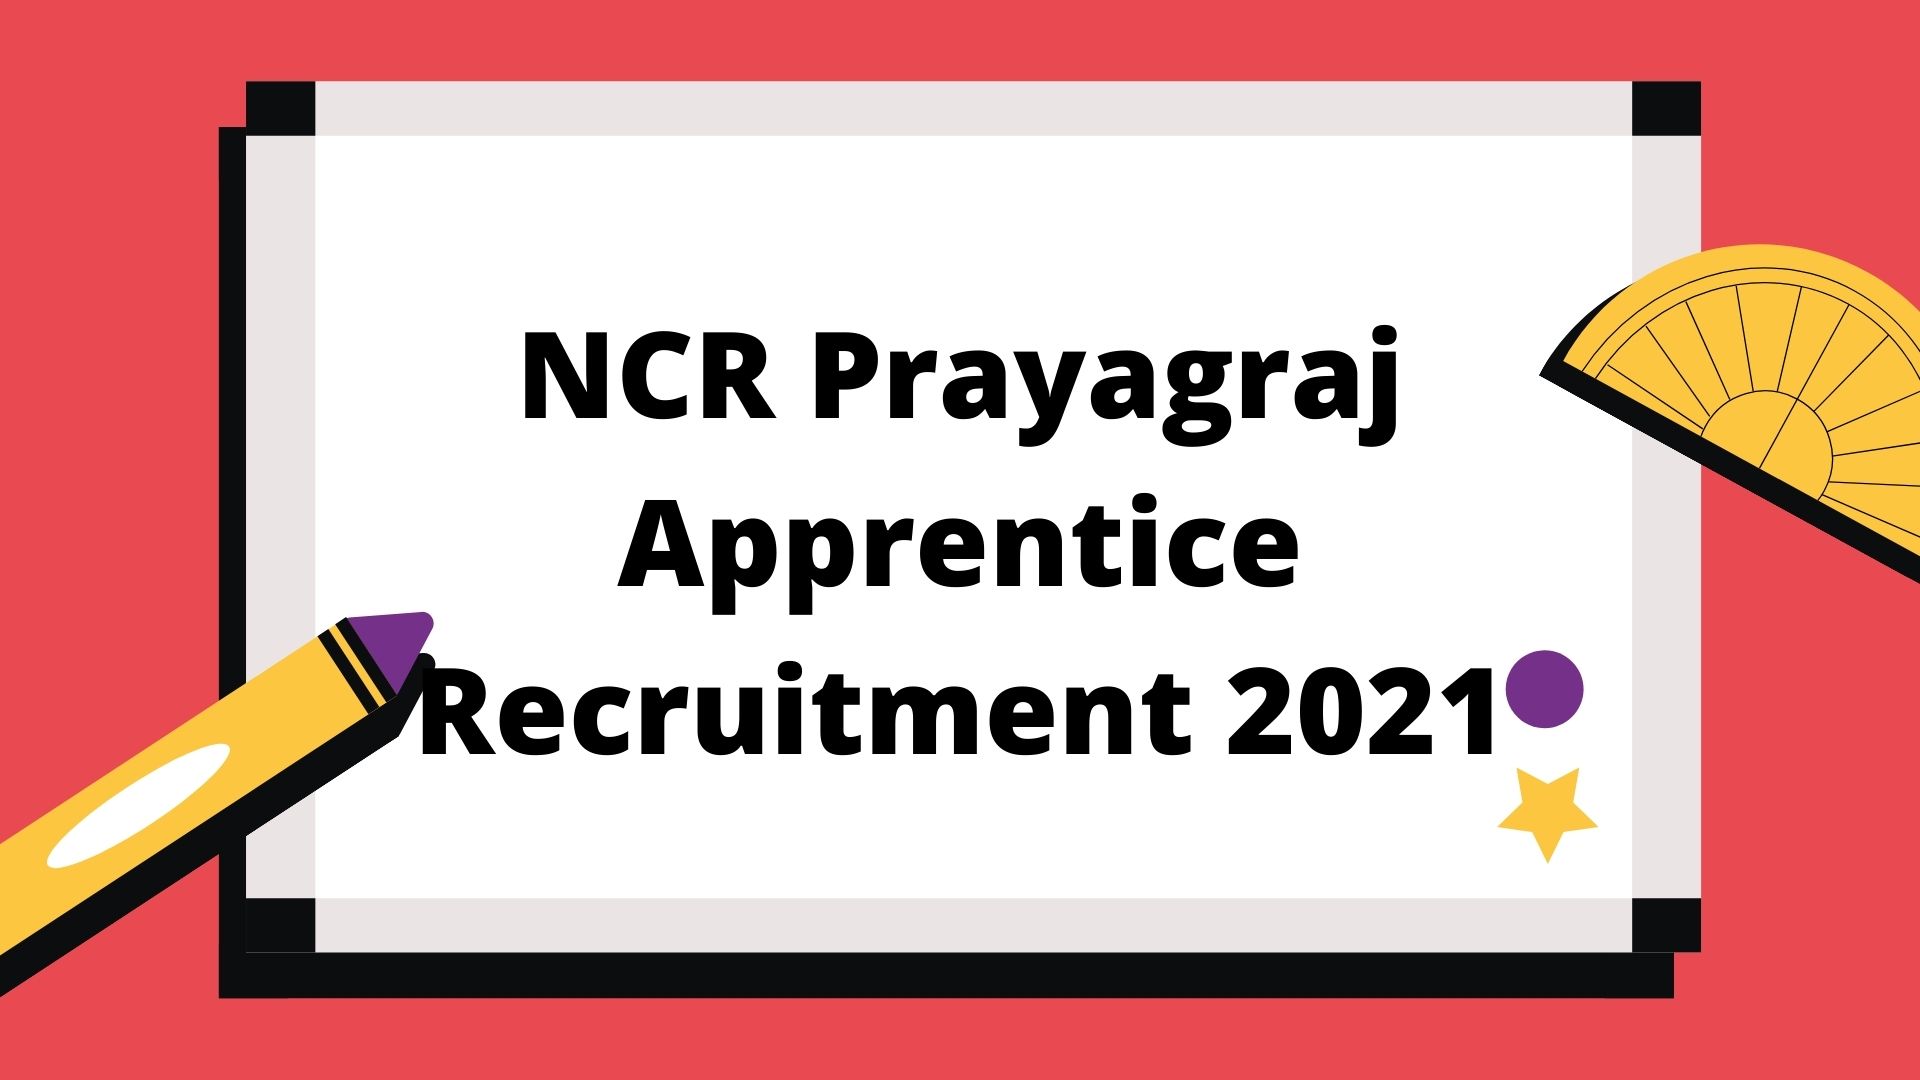 NCR Prayagraj Apprentice Recruitment 2021